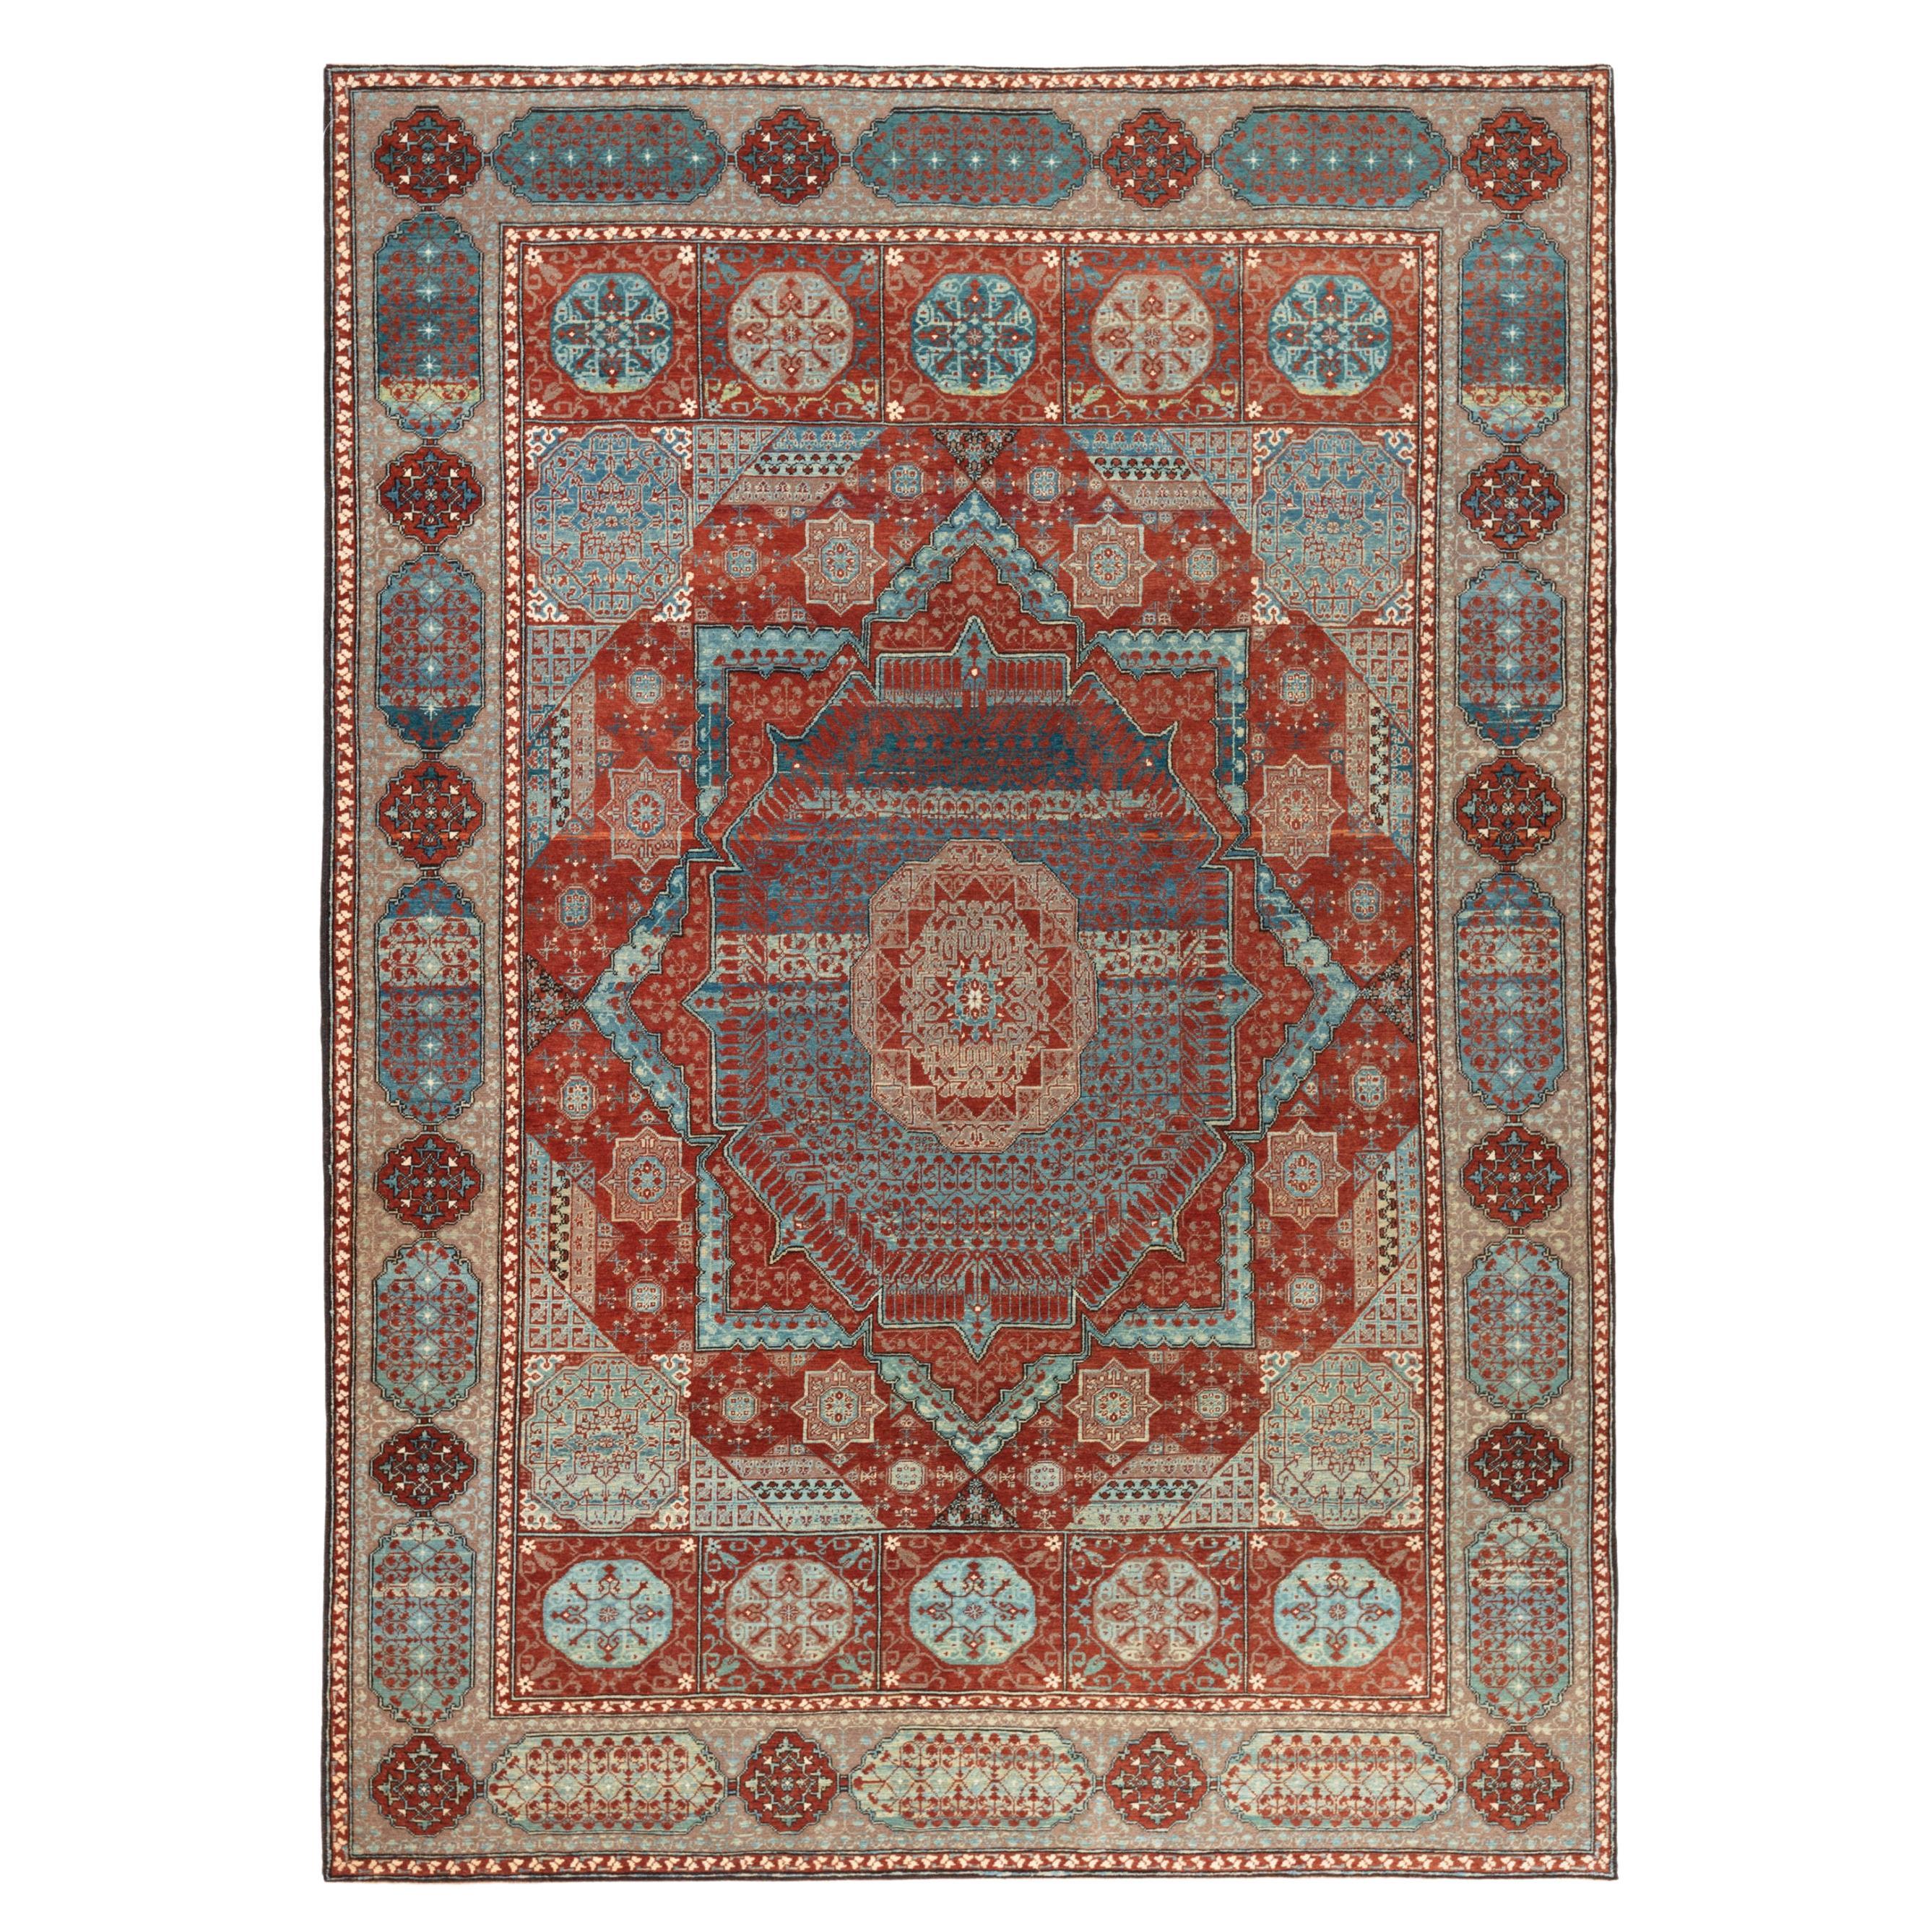 Ararat-Teppich, Simonetti Mamluk, Teppich im Stil des 16. Jahrhunderts, natürlich gefärbt